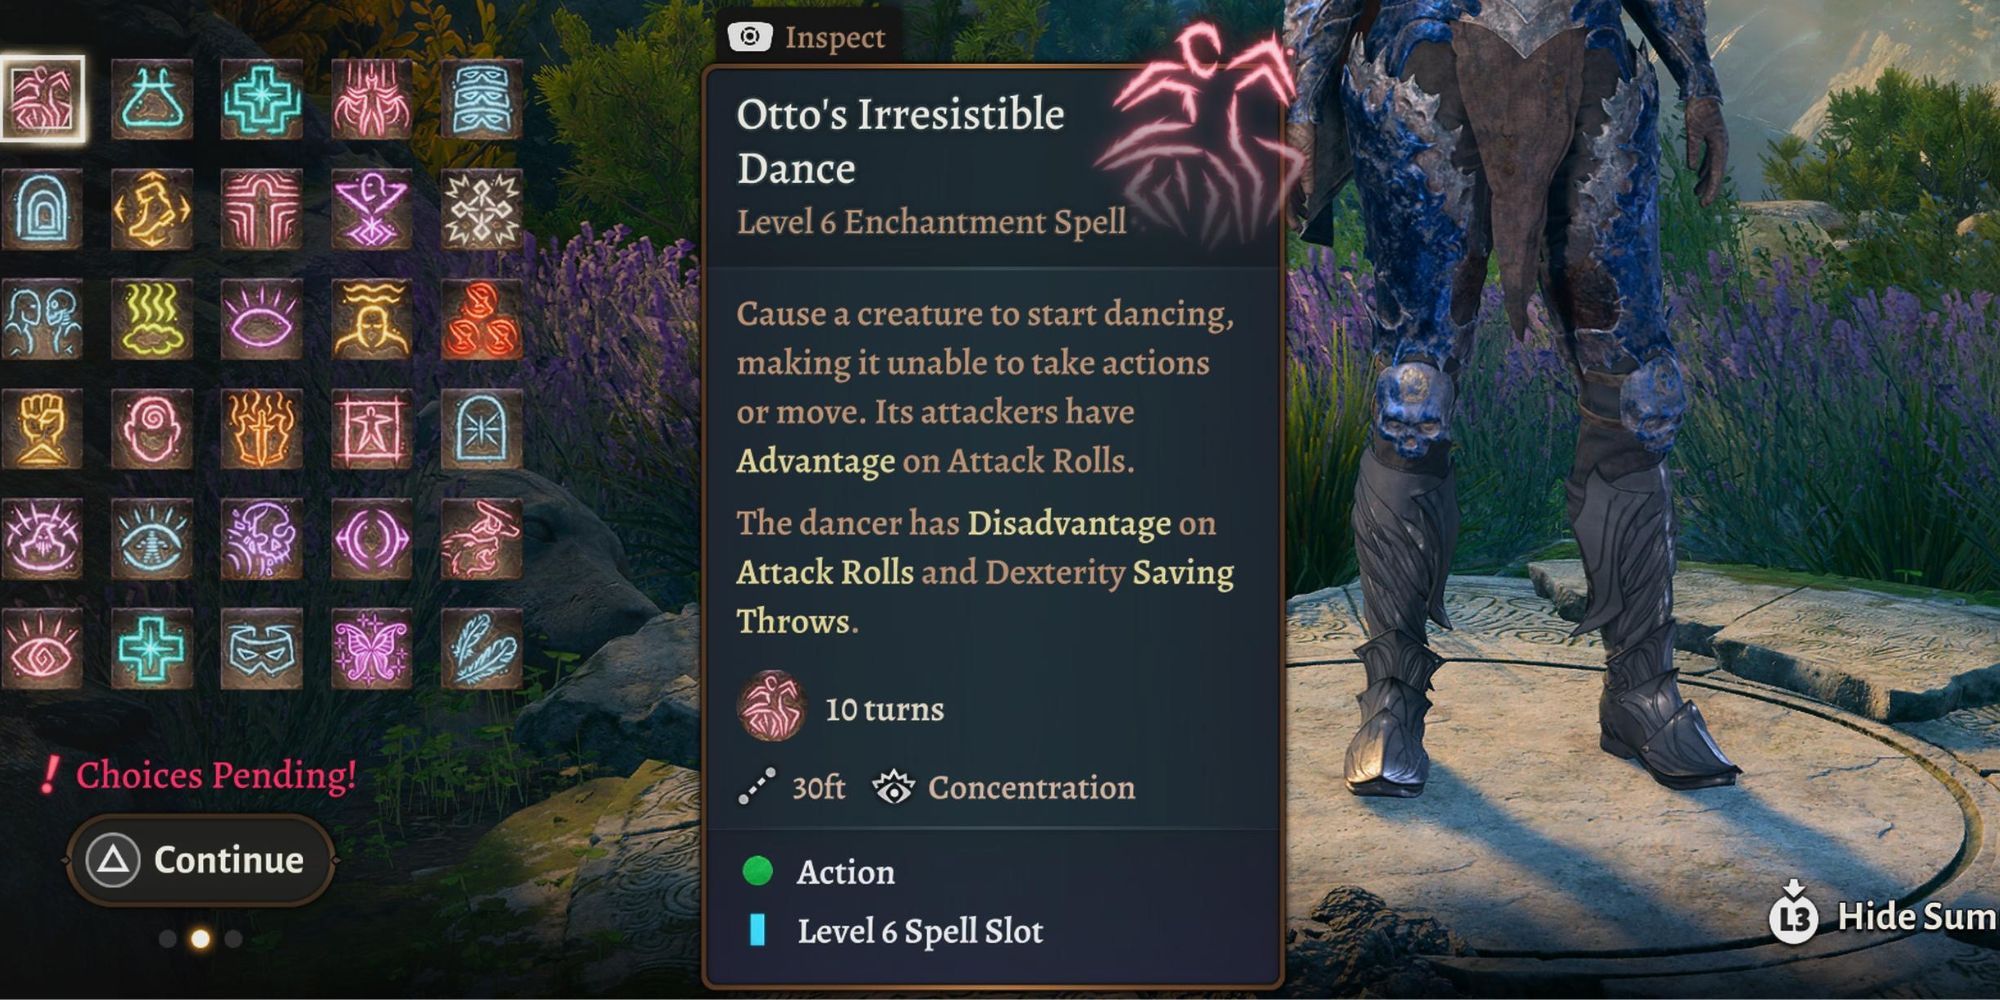 Otto's Irresistible Dance in Baldur’s Gate 3